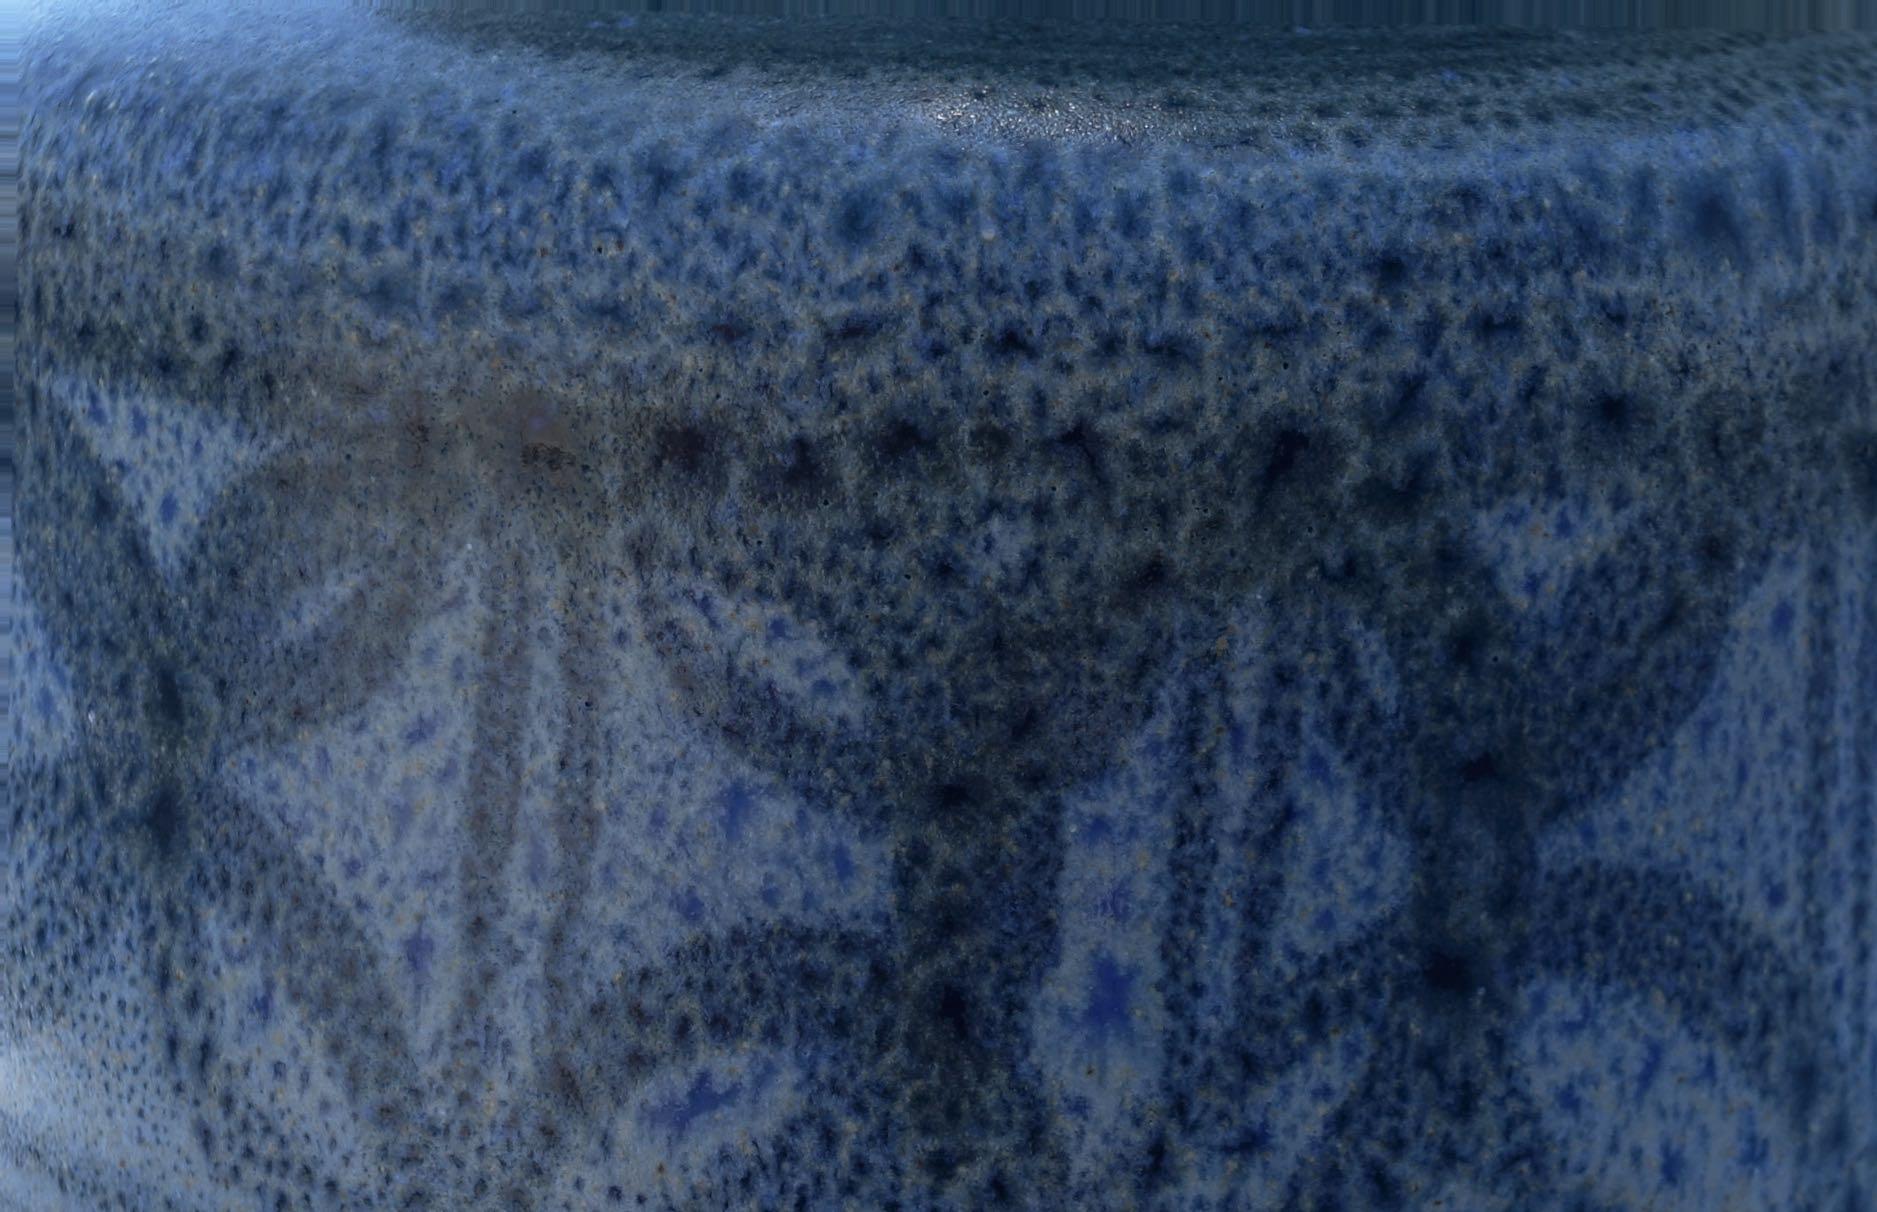 Midcentury French mottled shades of blue with horizontal decorative design band vase.
Matte finish.
 